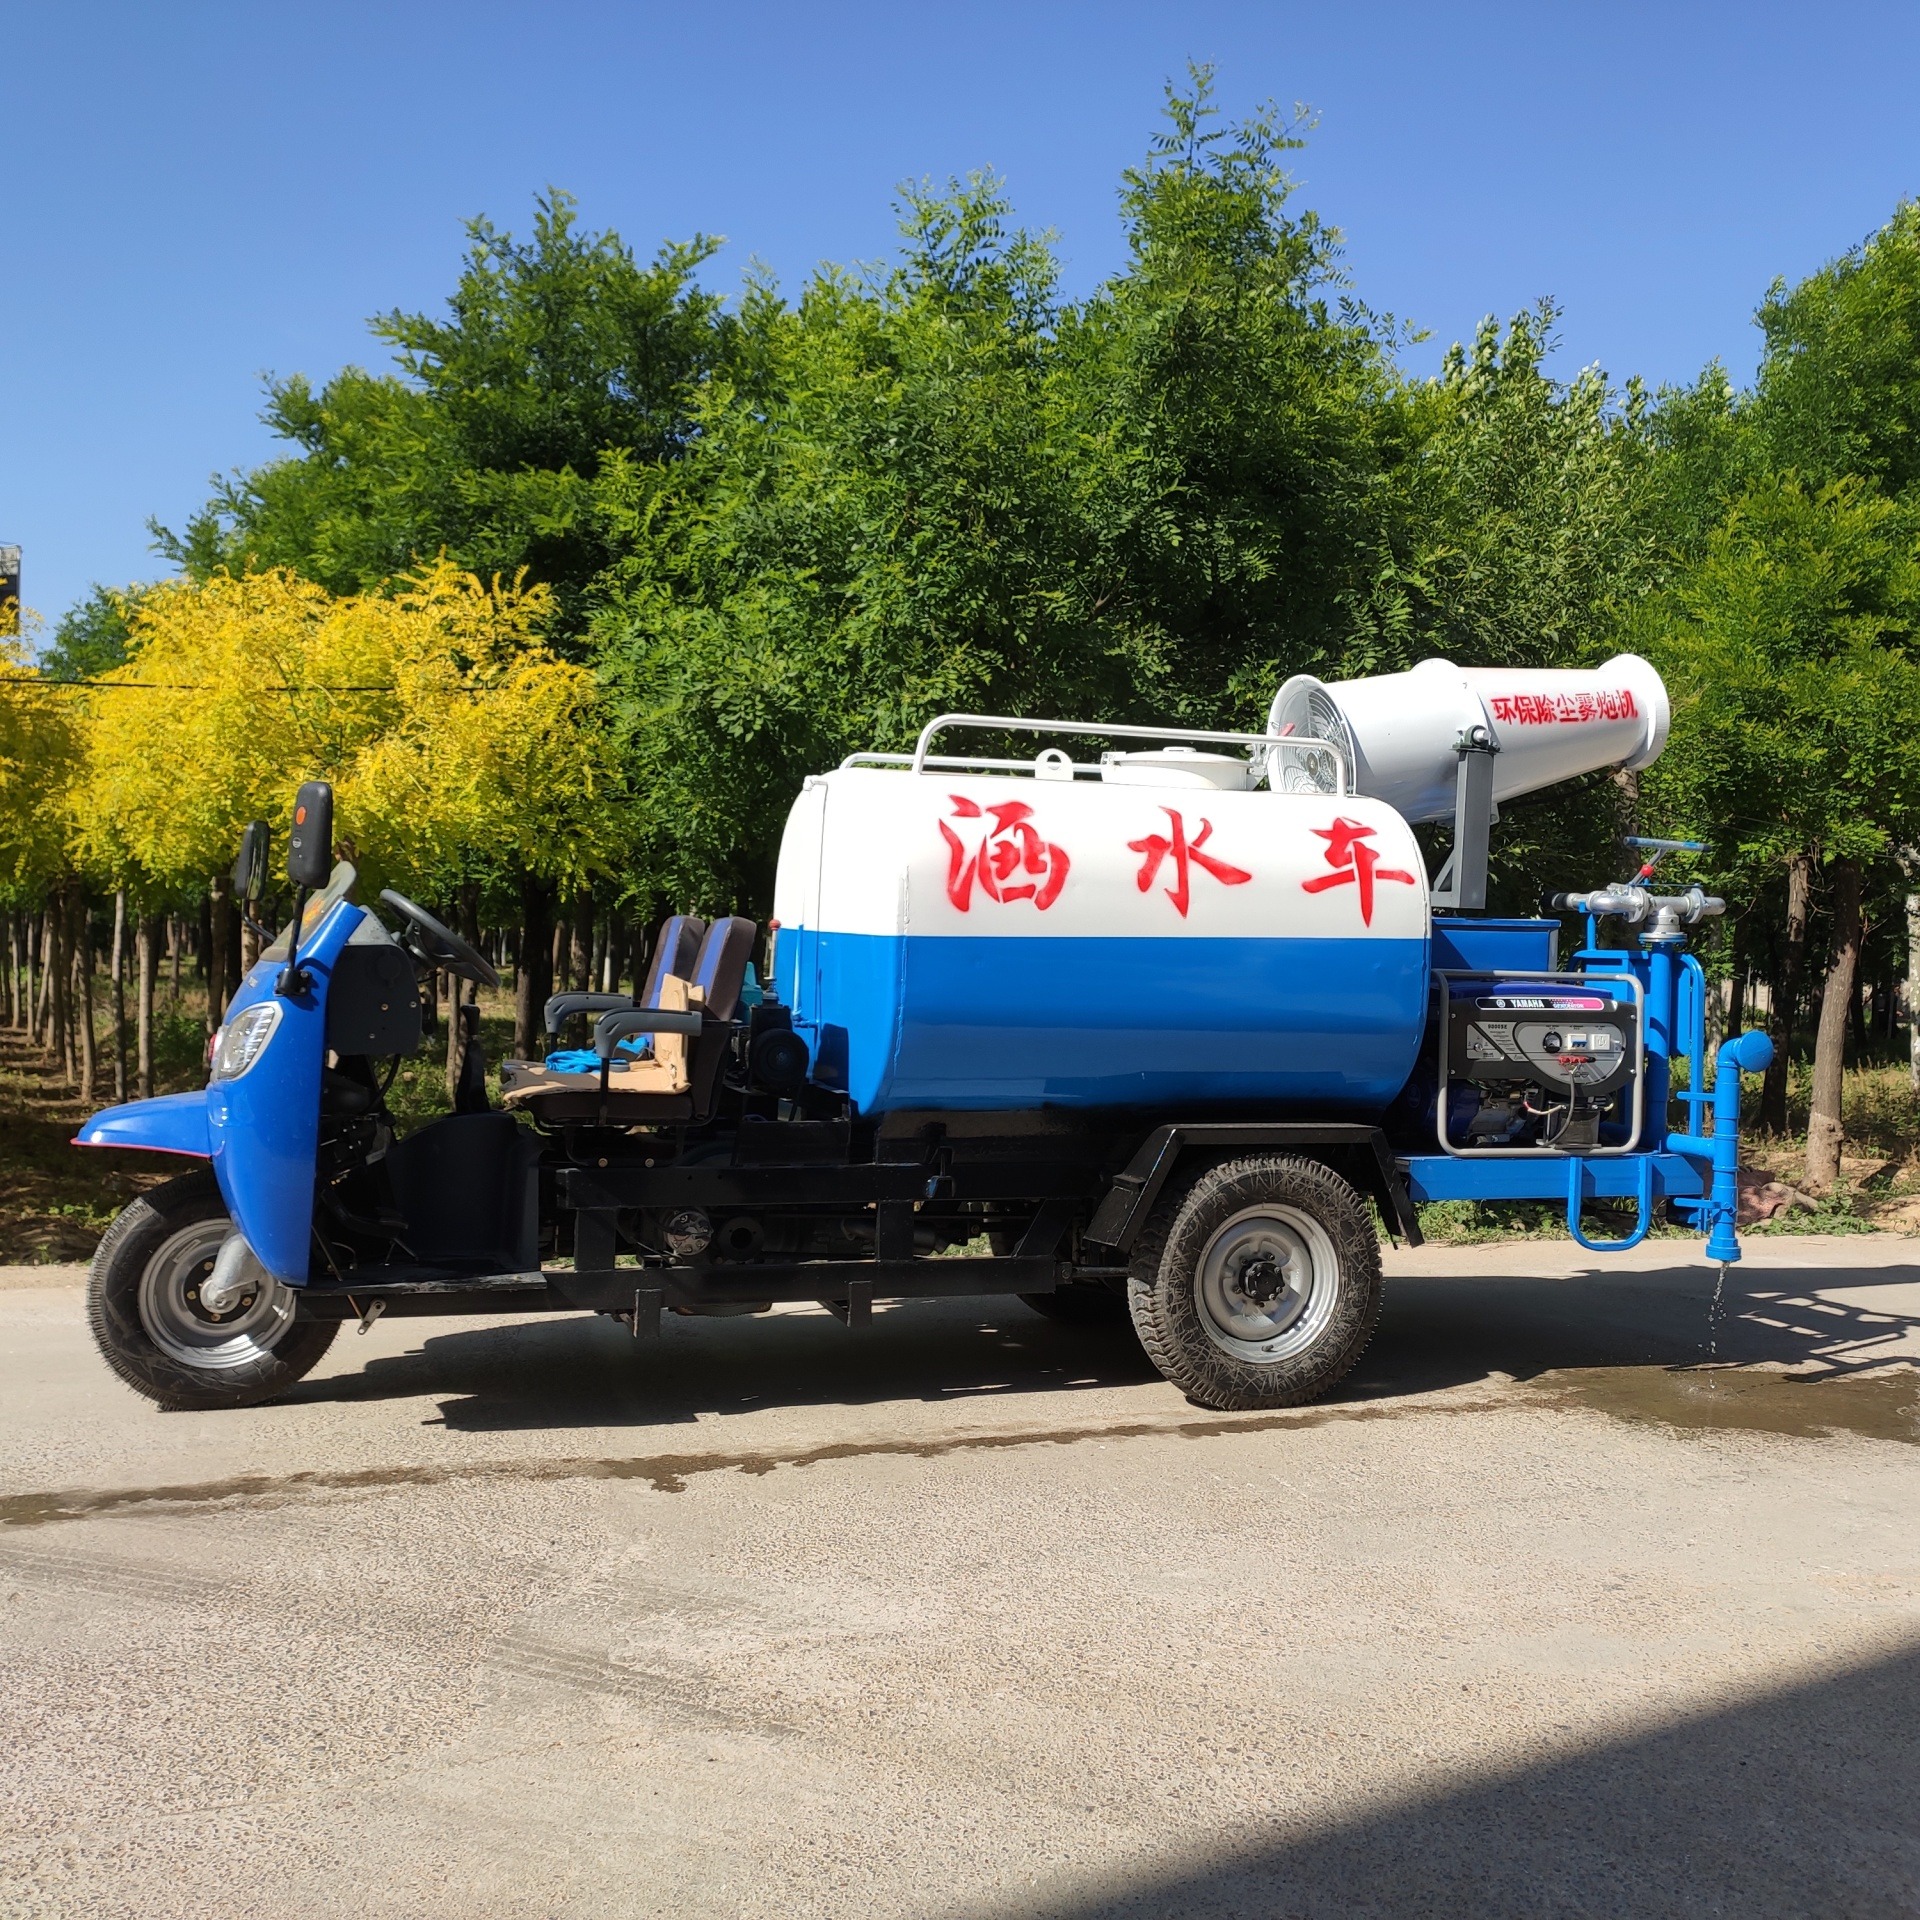 电动消防车 清洁路面 卫生防尘 适用于浇水喷洒树林 荣跃图片